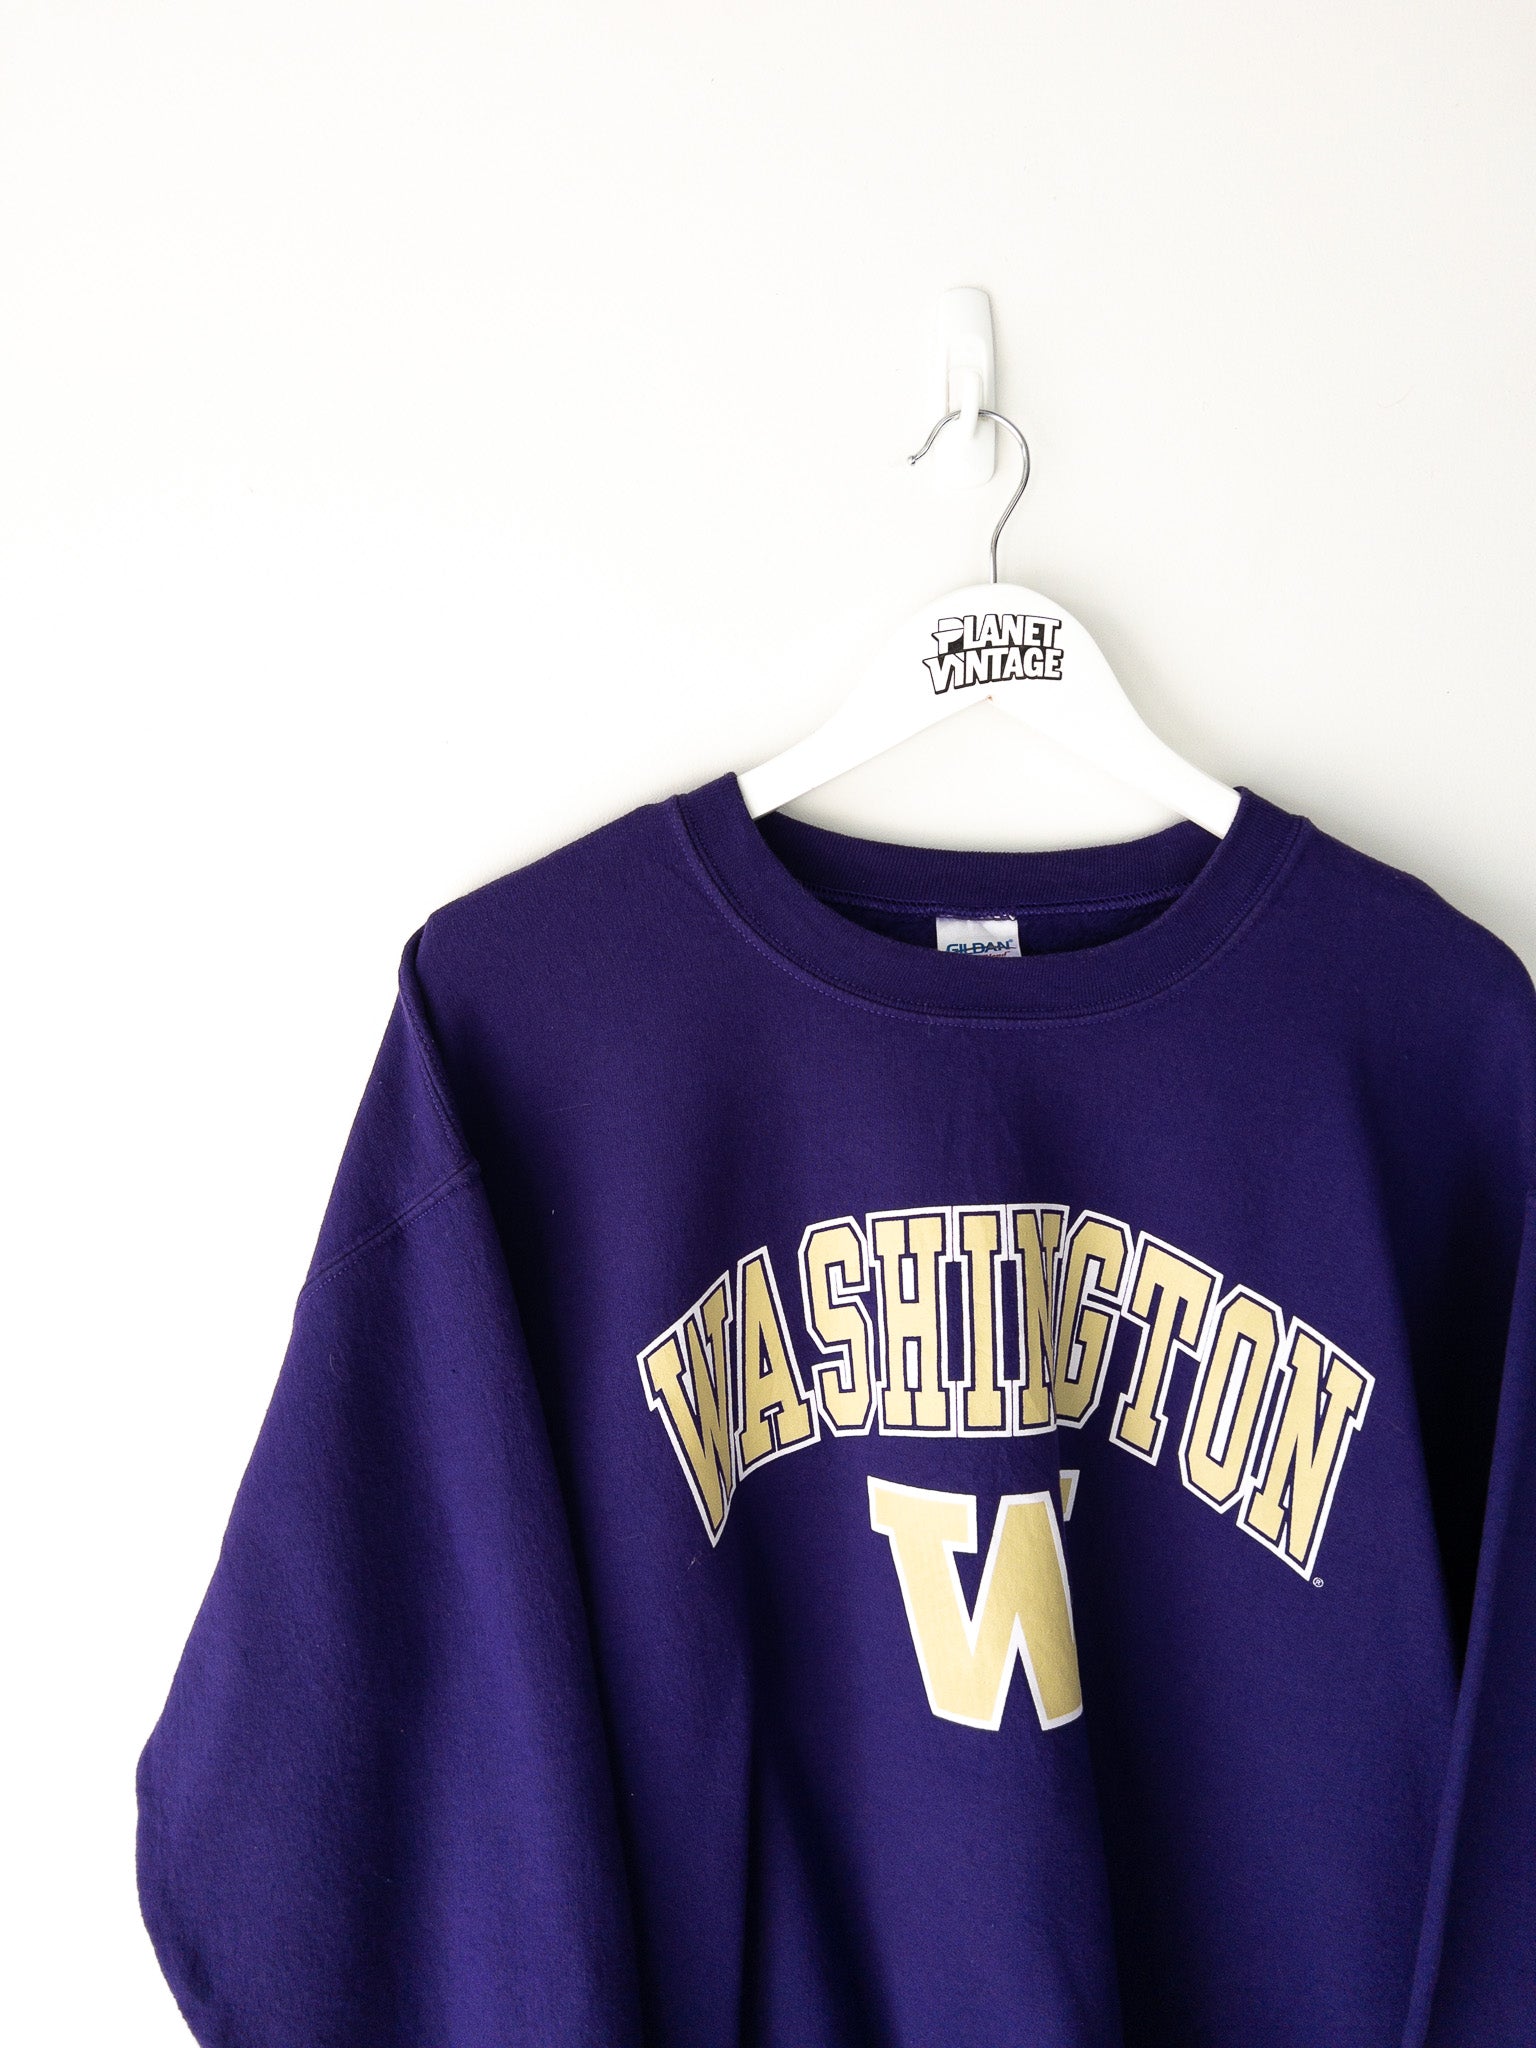 Vintage Washington Huskies Sweatshirt (L)